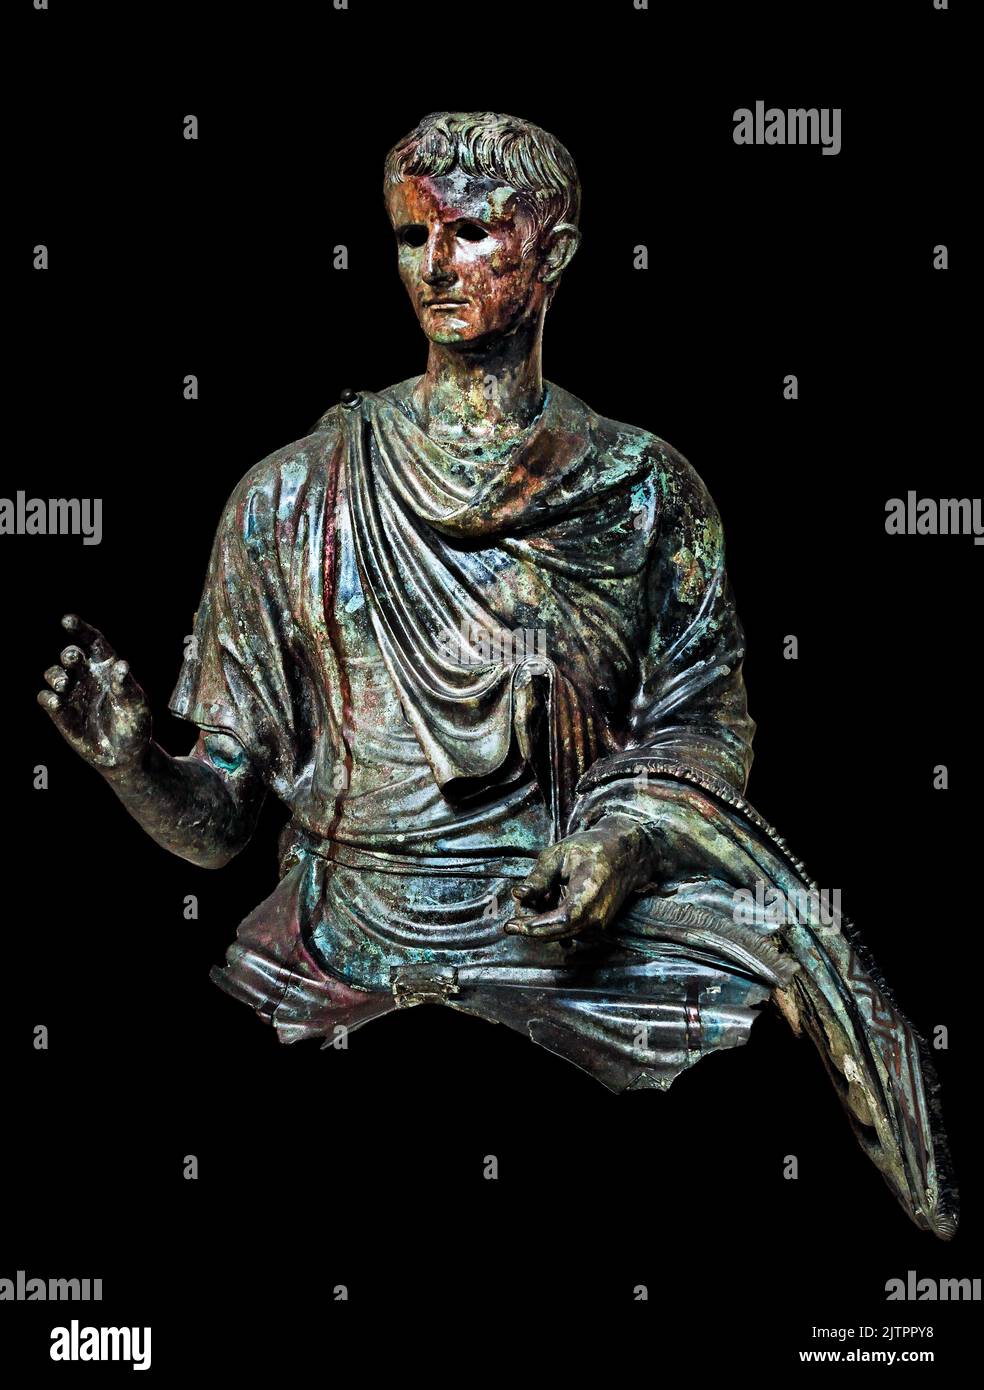 Statue de bronze romain, empereur romain Auguste, 12-10 av. J.-C., trouvée dans la mer d'Agéan, île d'Euboea, Musée archéologique national d'Athènes. Banque D'Images